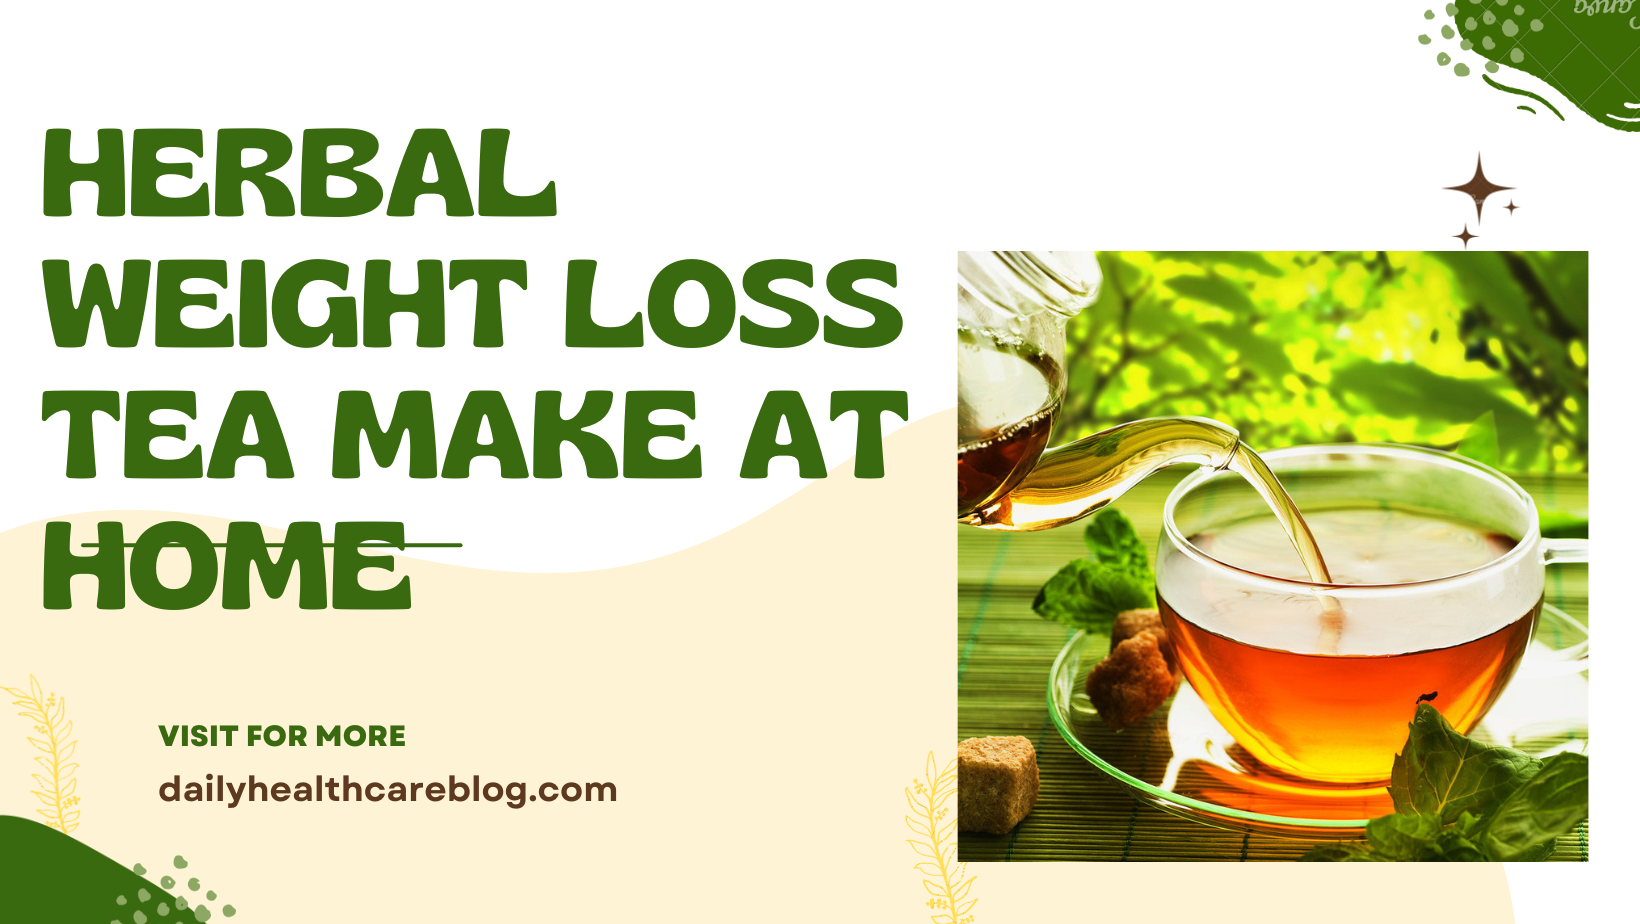 herbal weight loss tea make at home